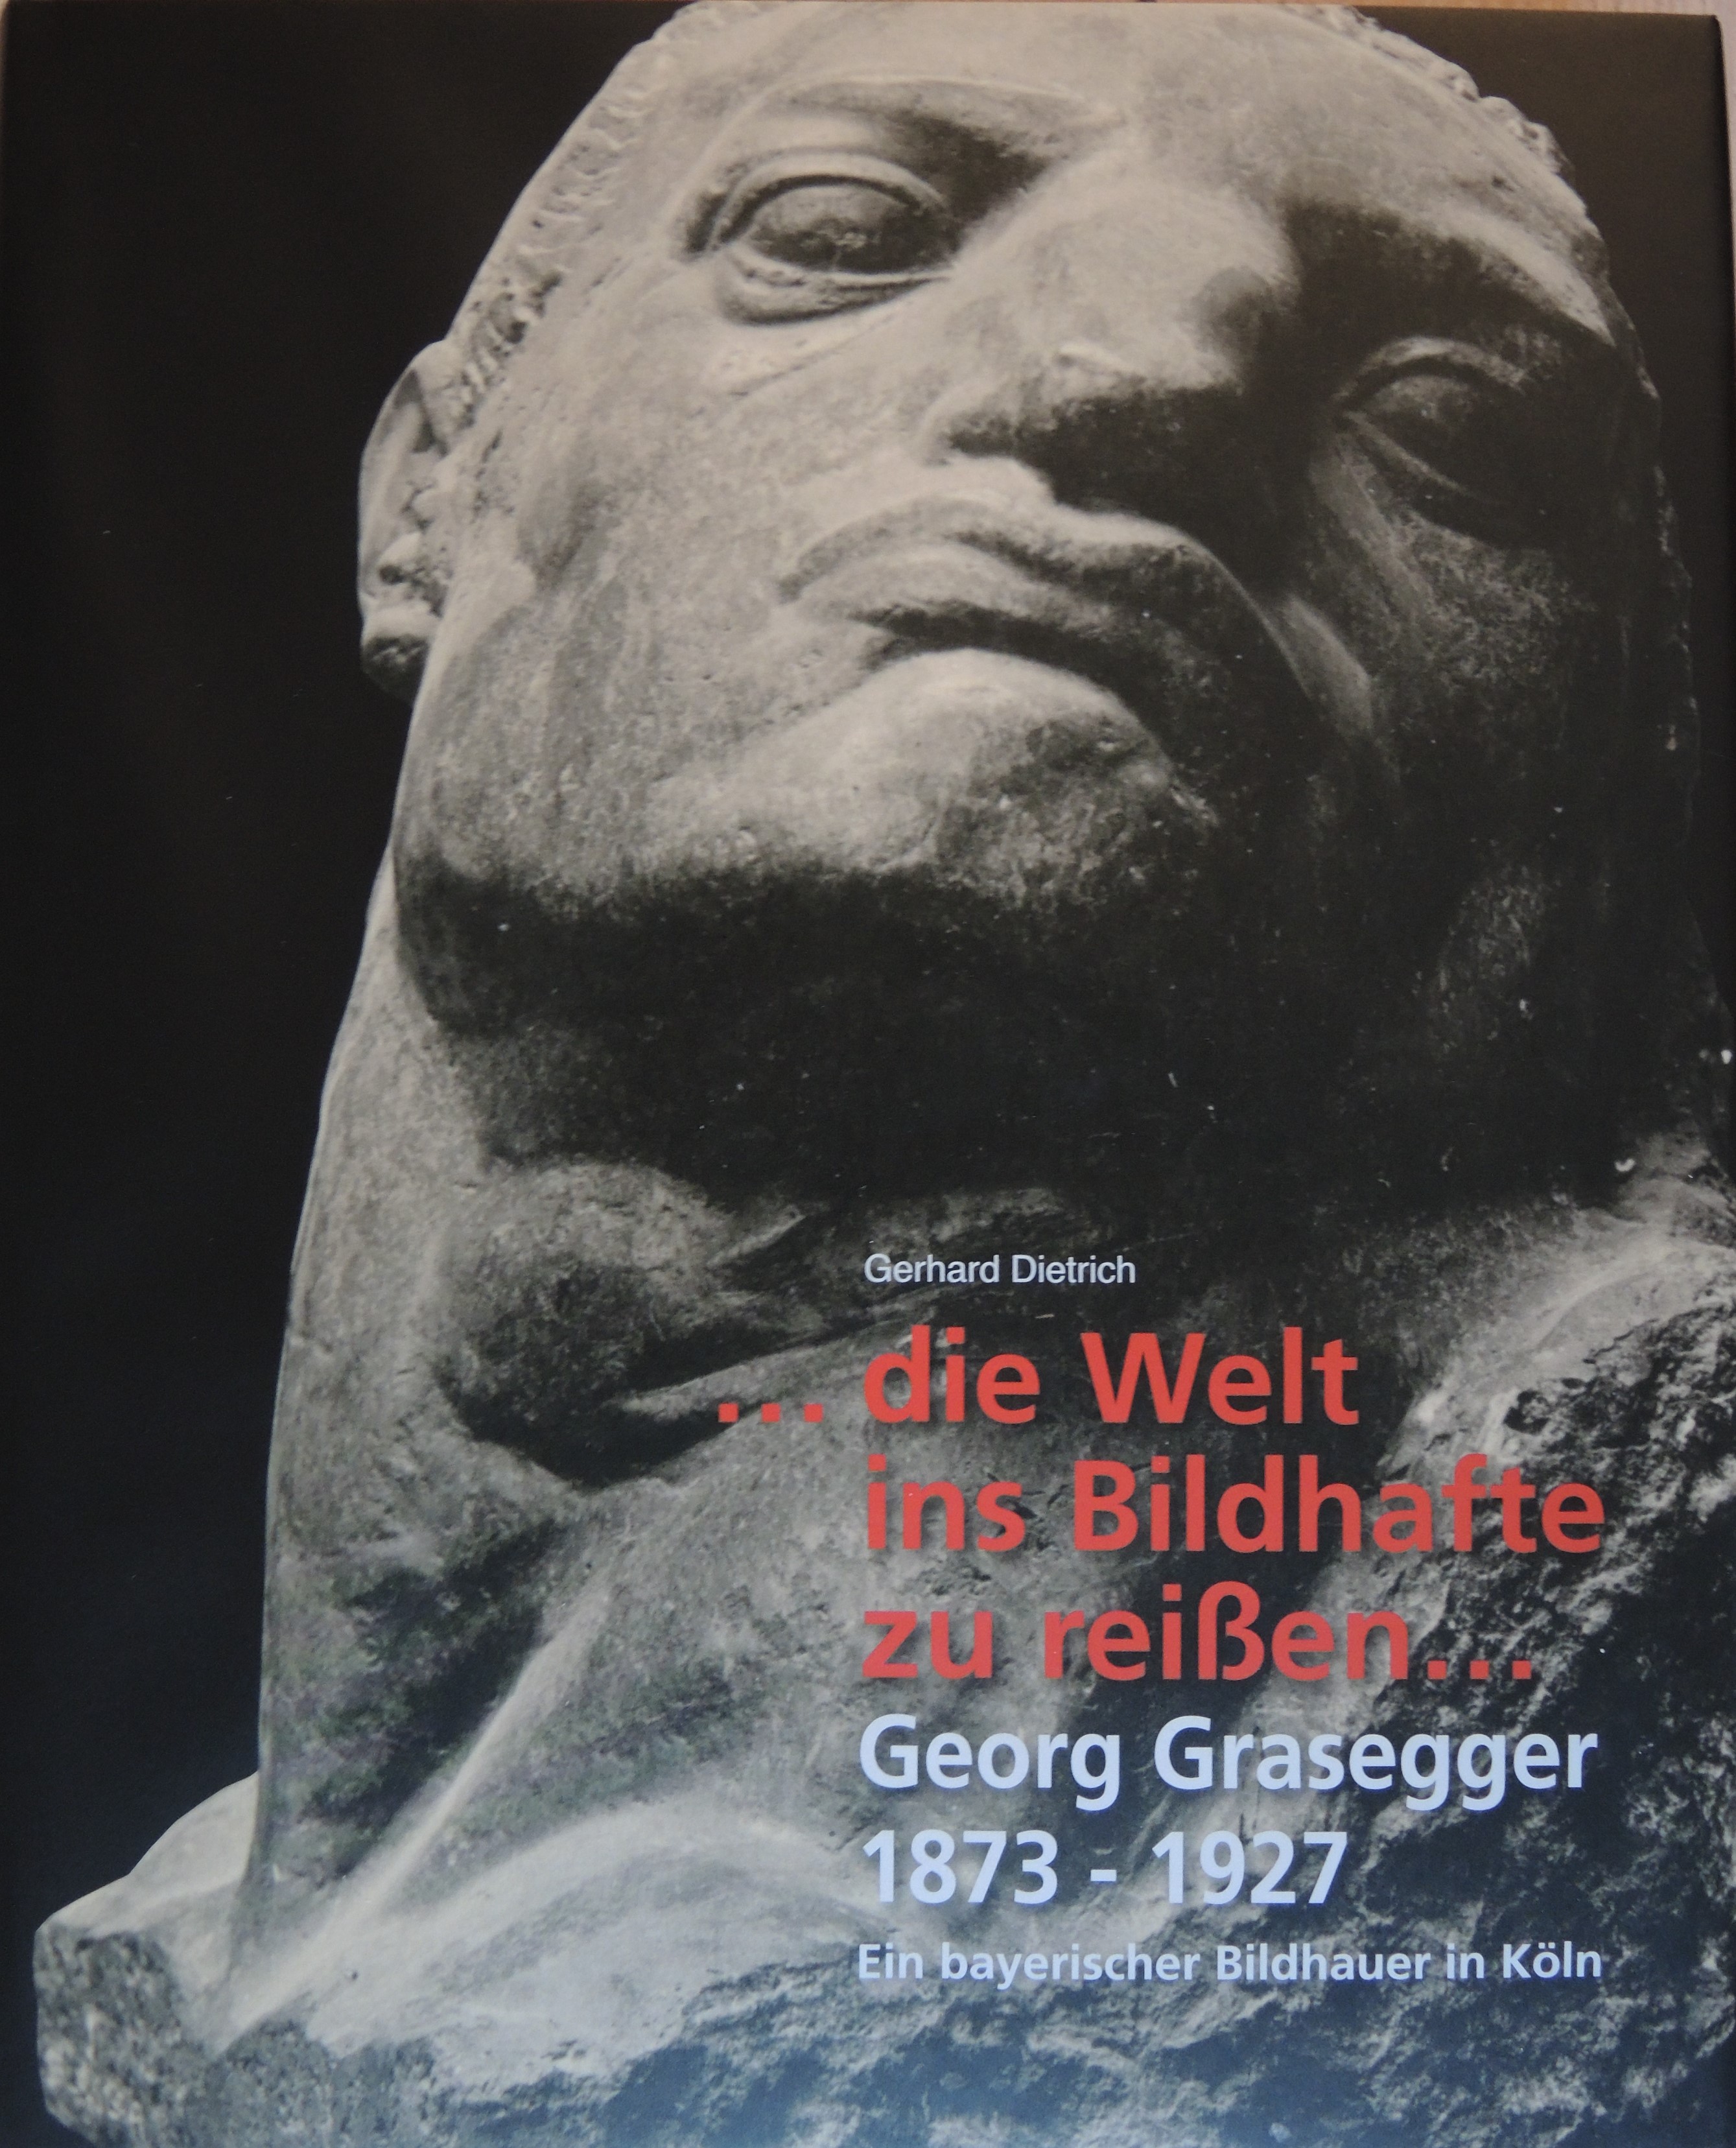 die Welt ins Bildhafte zu reißen.- Georg Grasegger 1873-1927, Ein bayerischer Bildhauer in Köln - Gerhard Dietrich, Helmuth Malzkorn